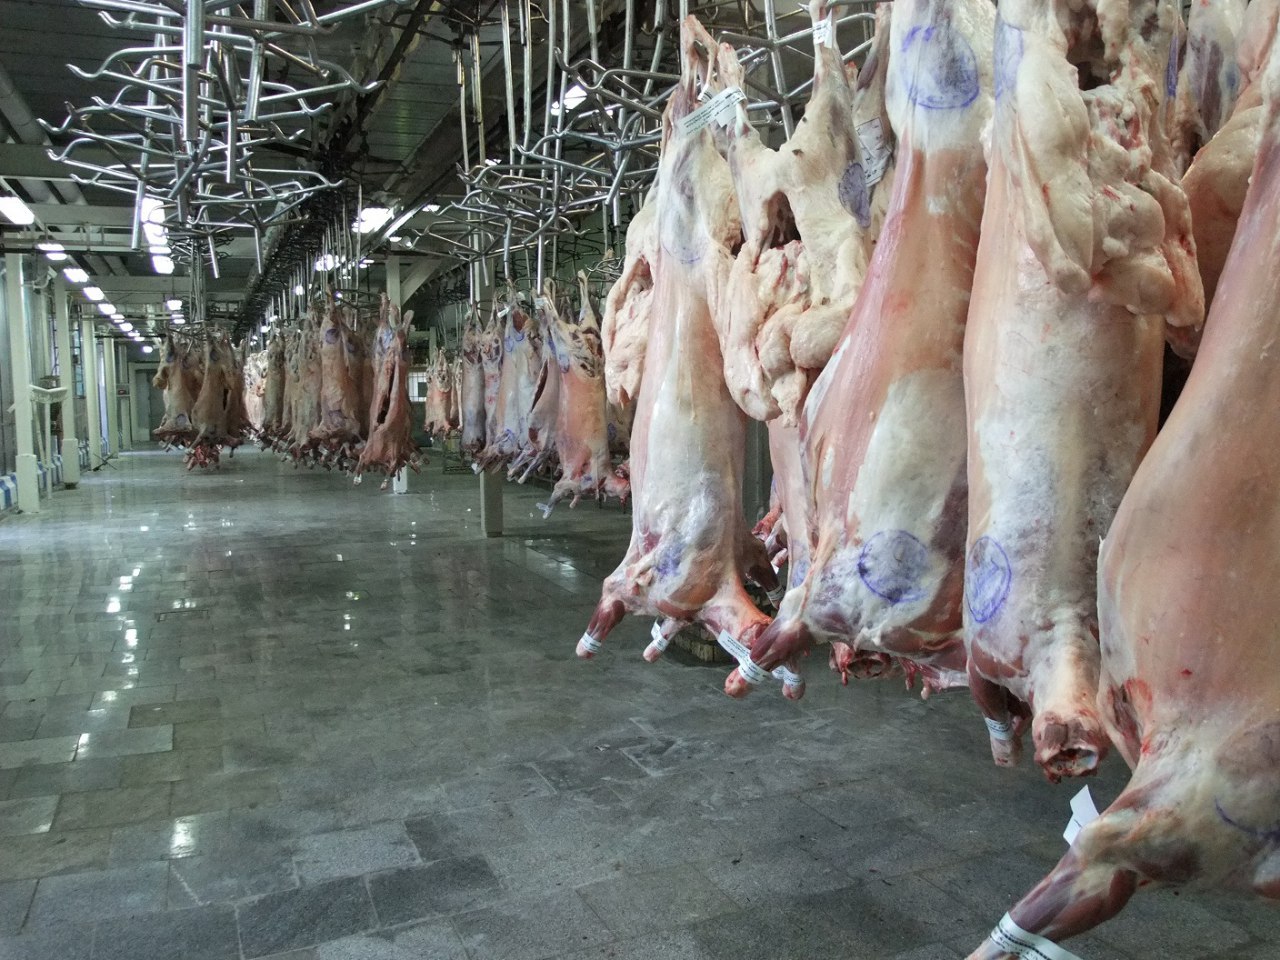 کشتارگاه صنعتی مشهد نقشی در قیمت گوشت ندارد/بهسازی کشتارگاه صنعتی مشهد به منظور افزایش کیفیت گوشت